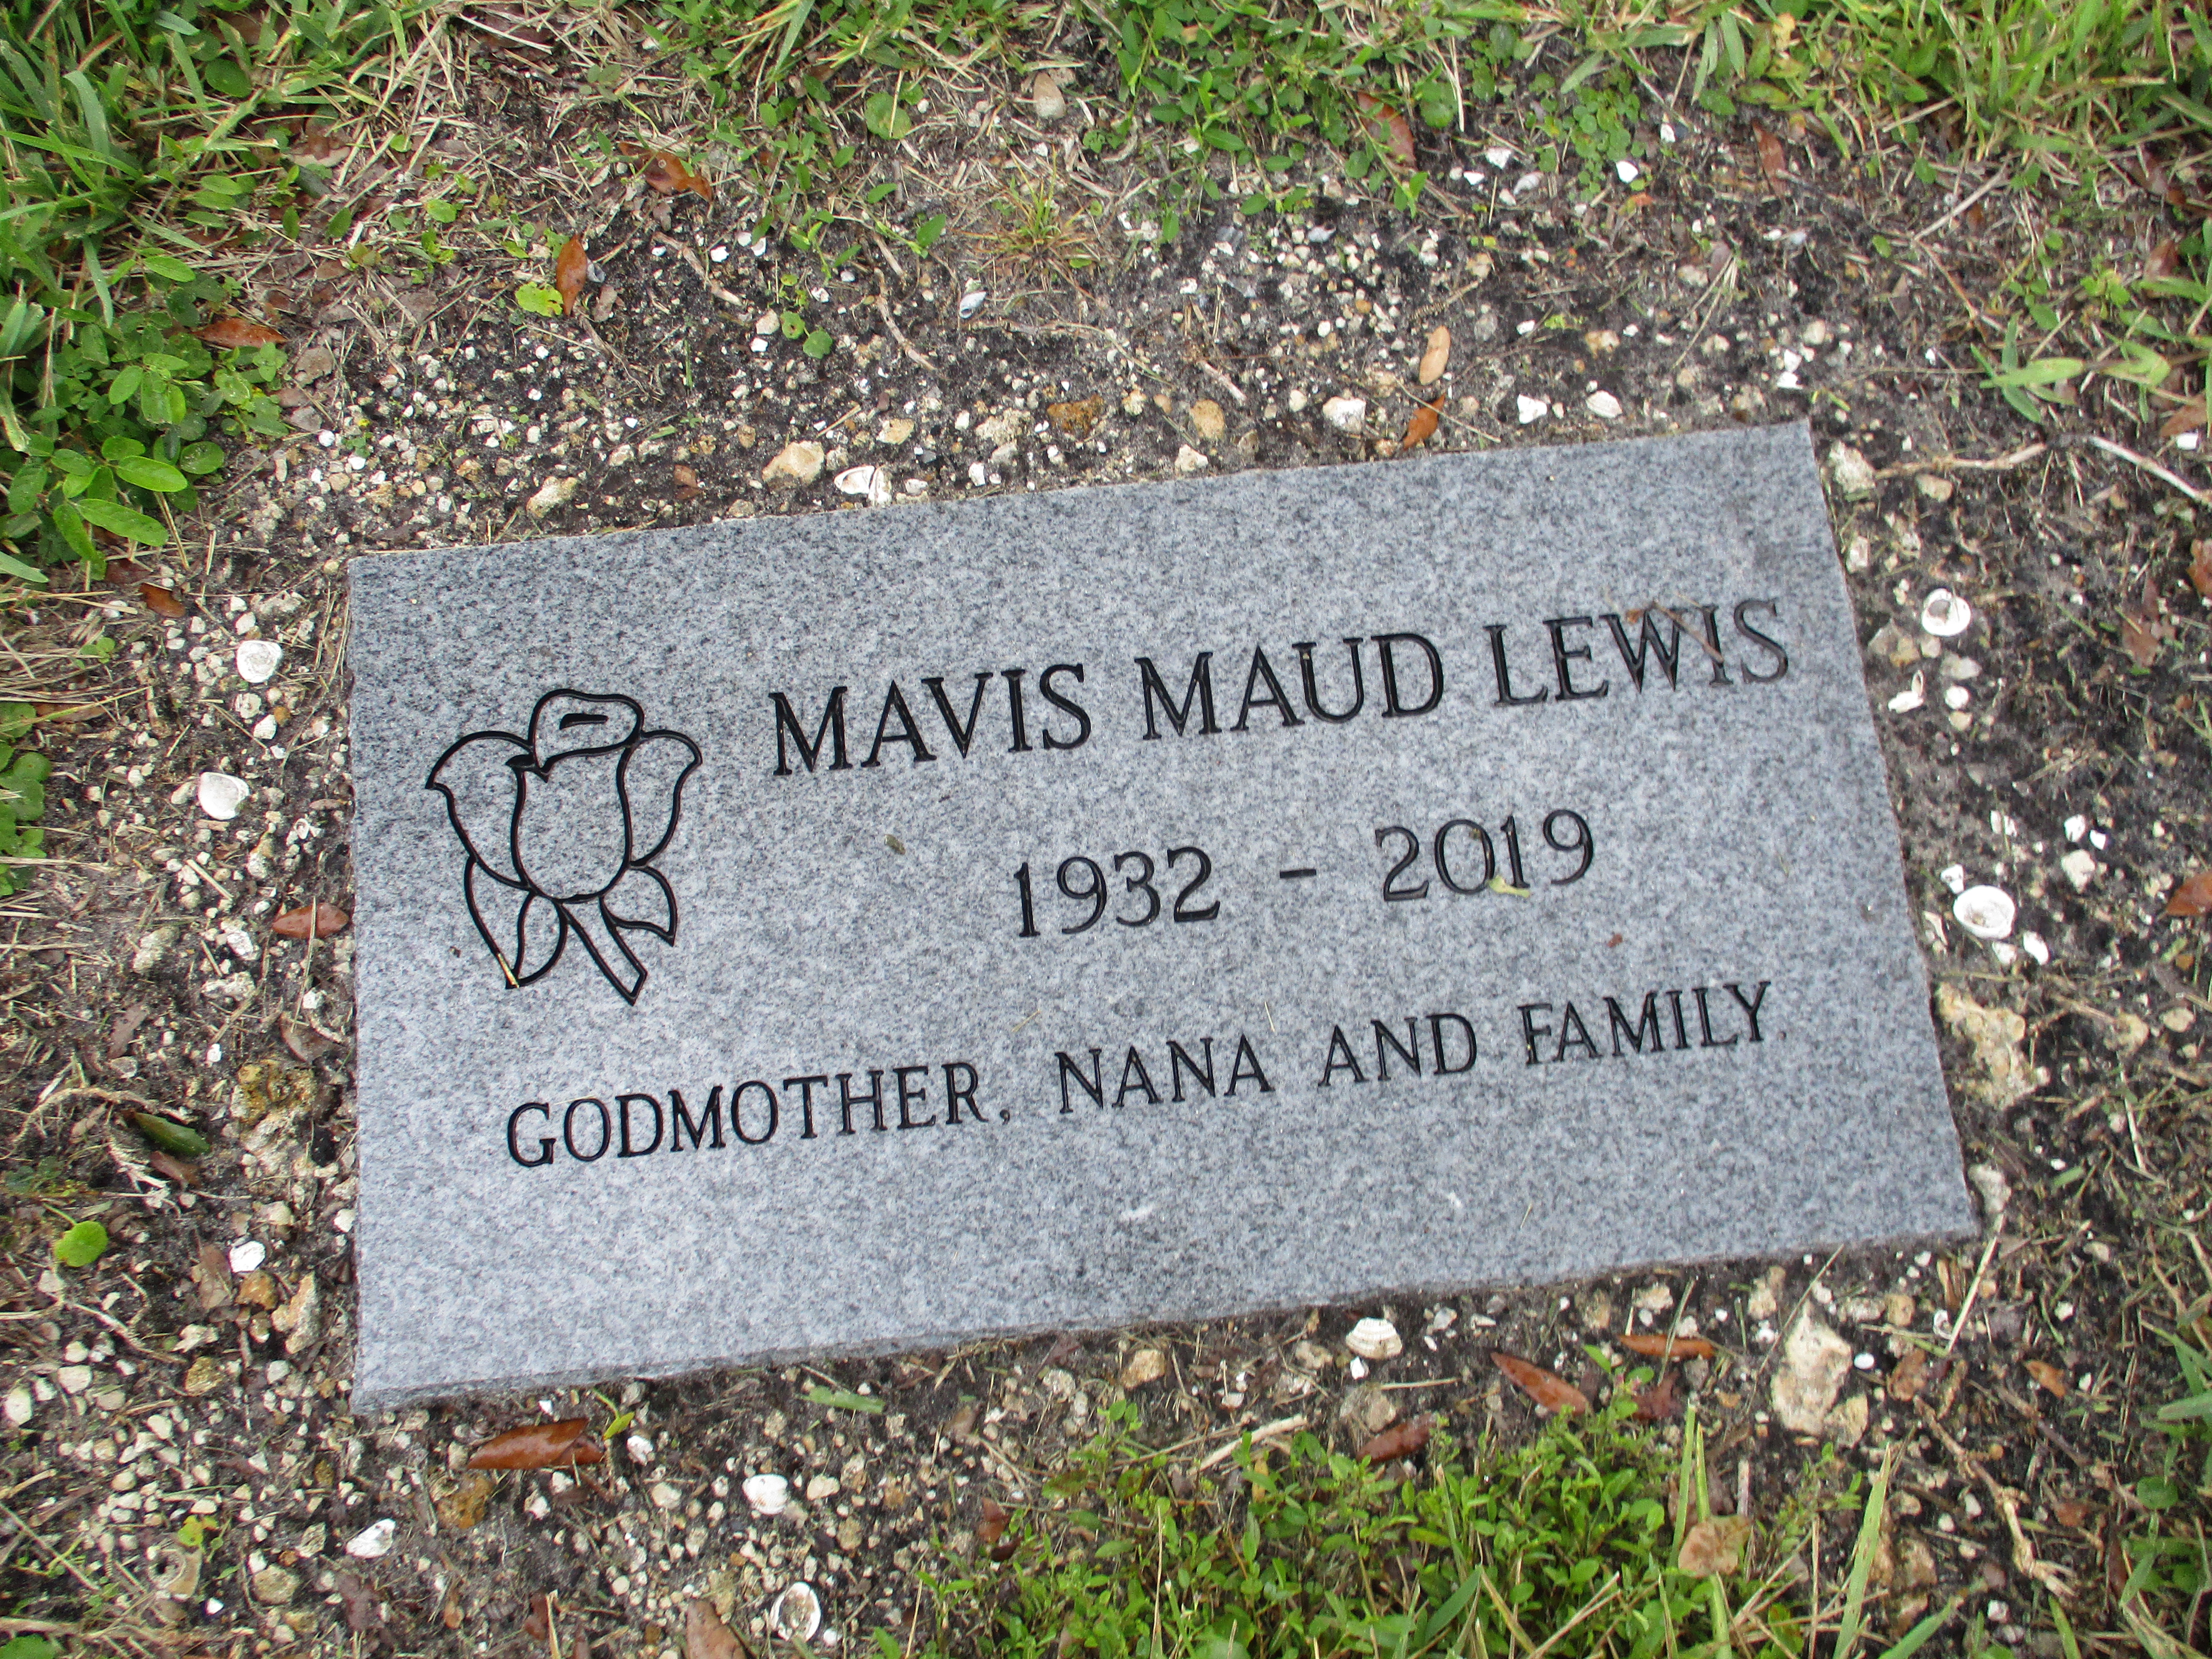 Mavis Maud Lewis